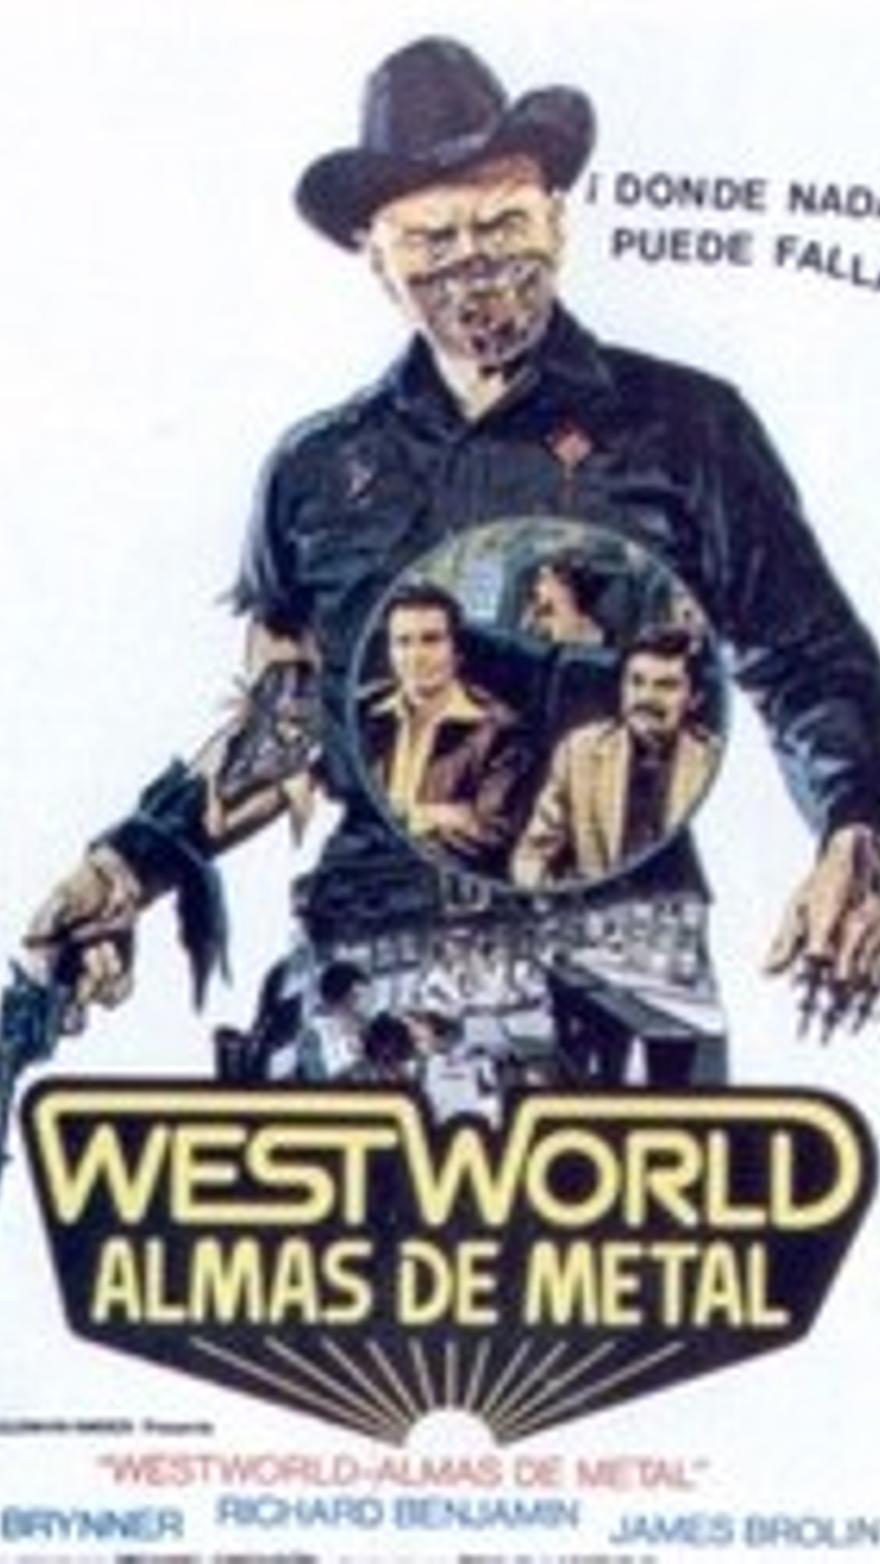 Westworld, almas de metal